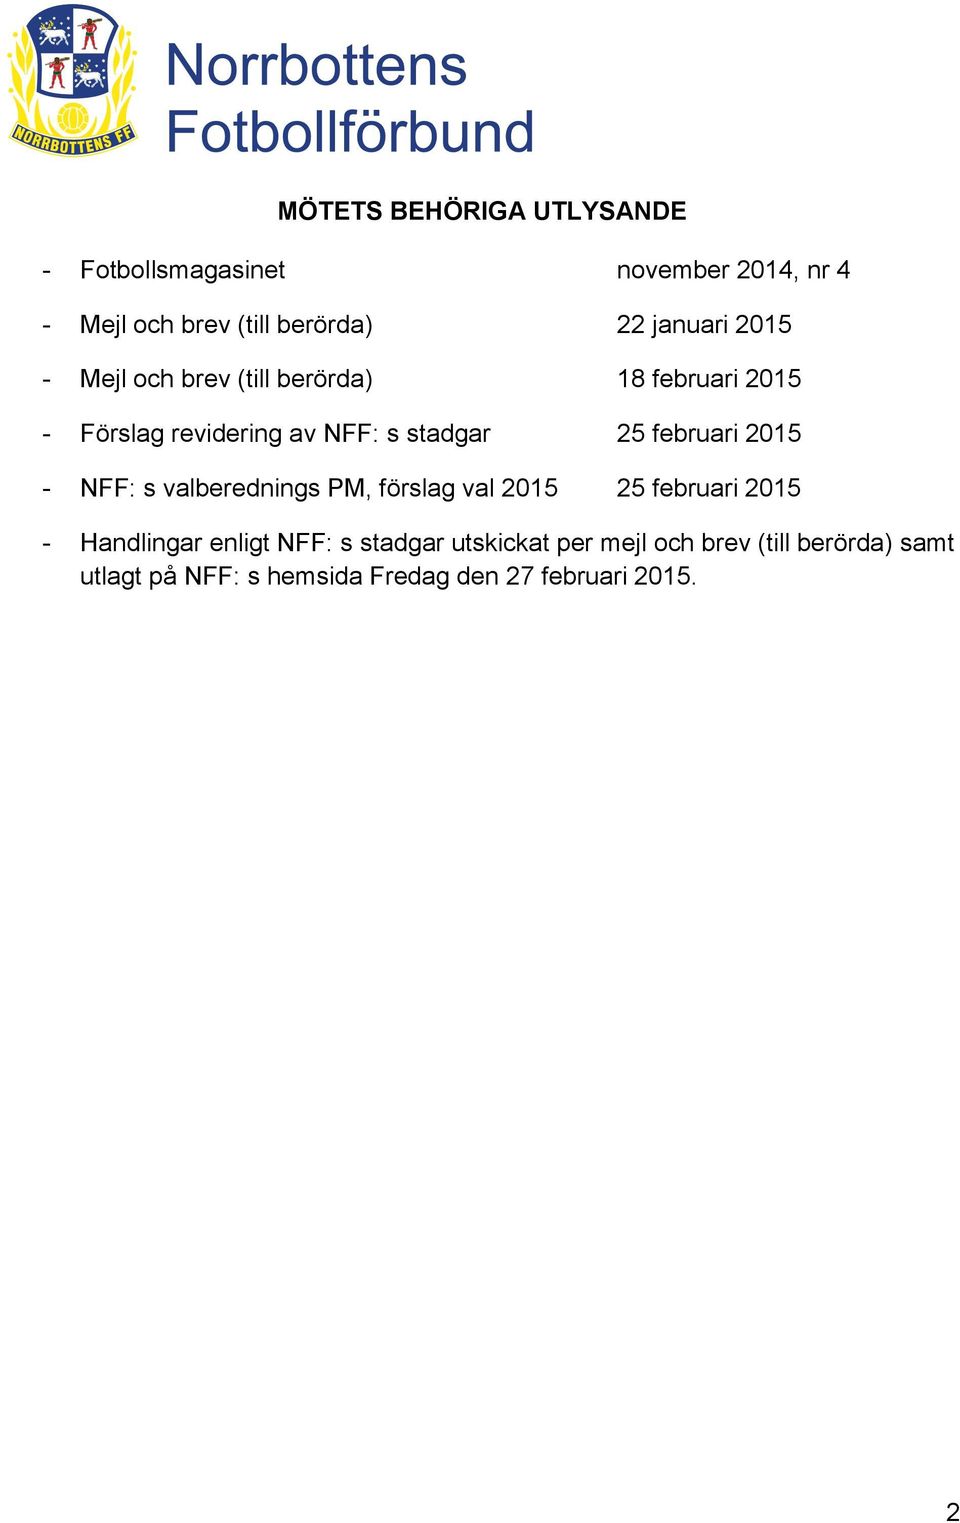 februari 2015 - NFF: s valberednings PM, förslag val 2015 25 februari 2015 - Handlingar enligt NFF: s